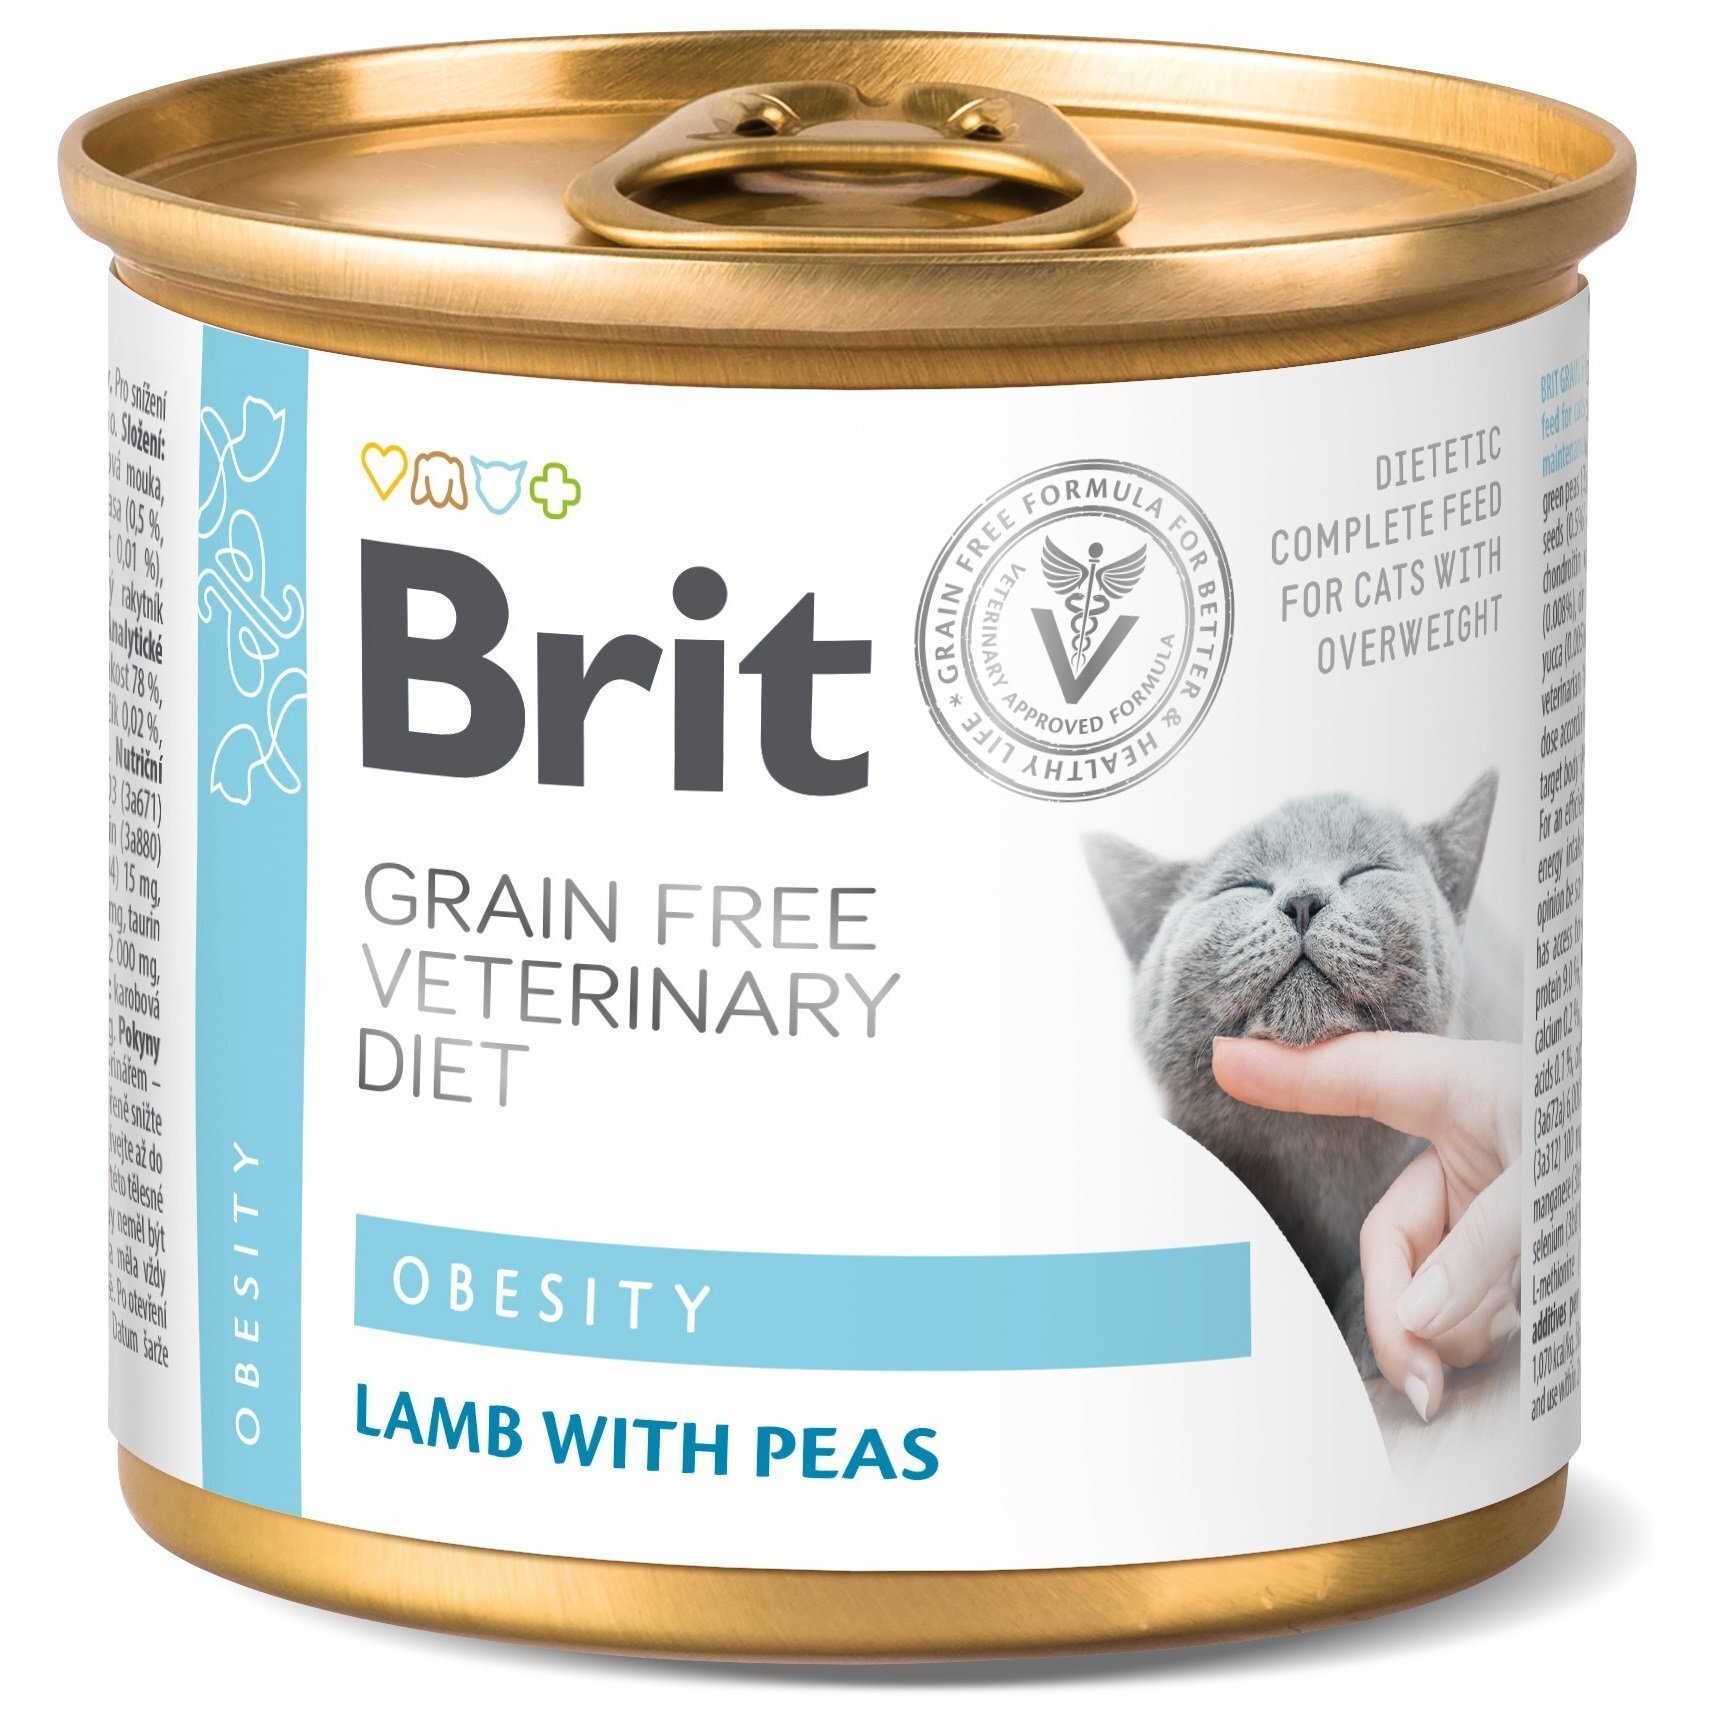 Консерва для котов Brit GF Veterinary Diet при ожирении и избыточном весе с ягненком и горохом 200г фото 1